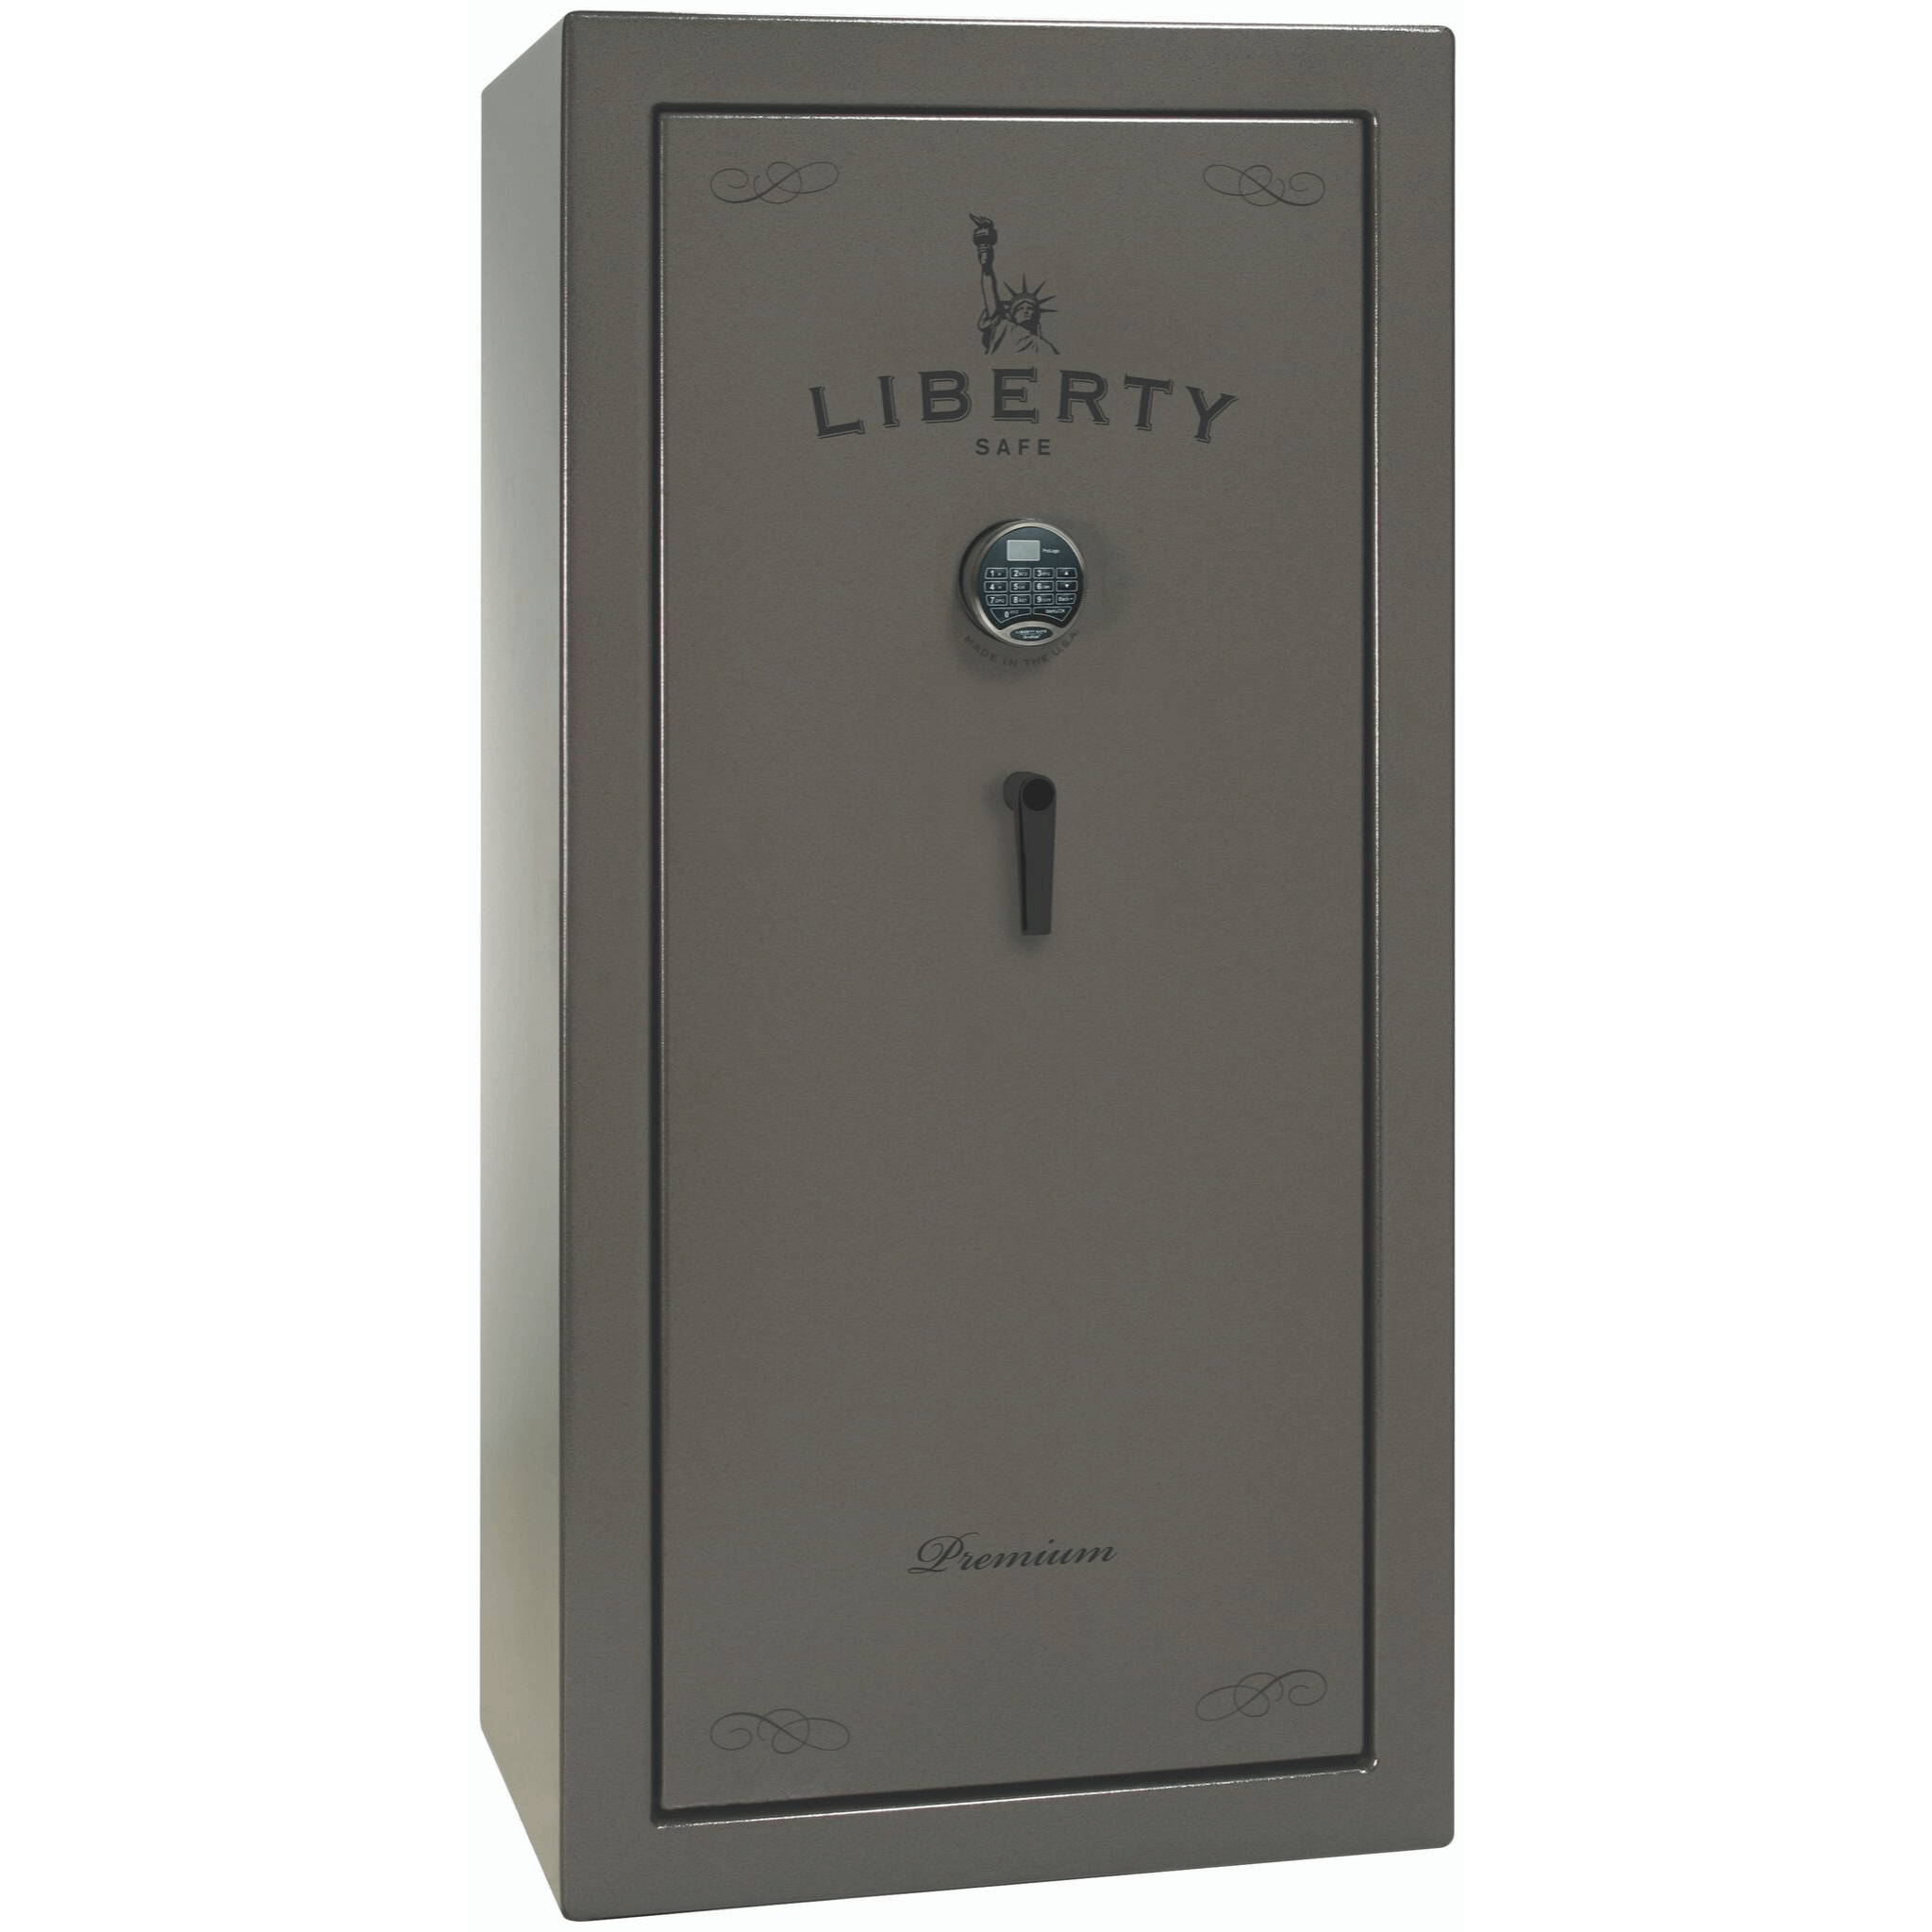 Liberty Safe Premium 20 Safe series